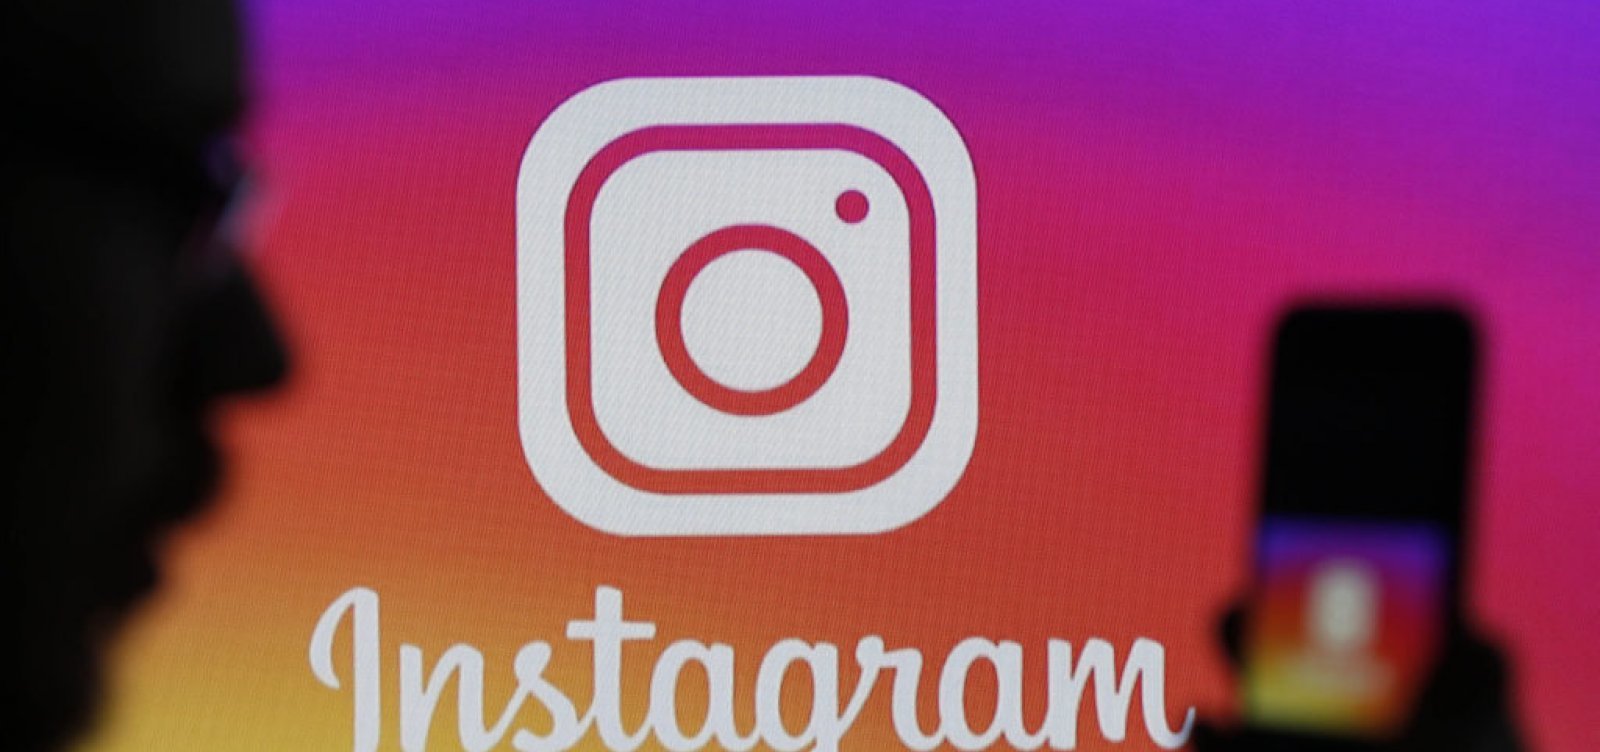 Rússia vai restringir uso do Instagram a partir desta segunda